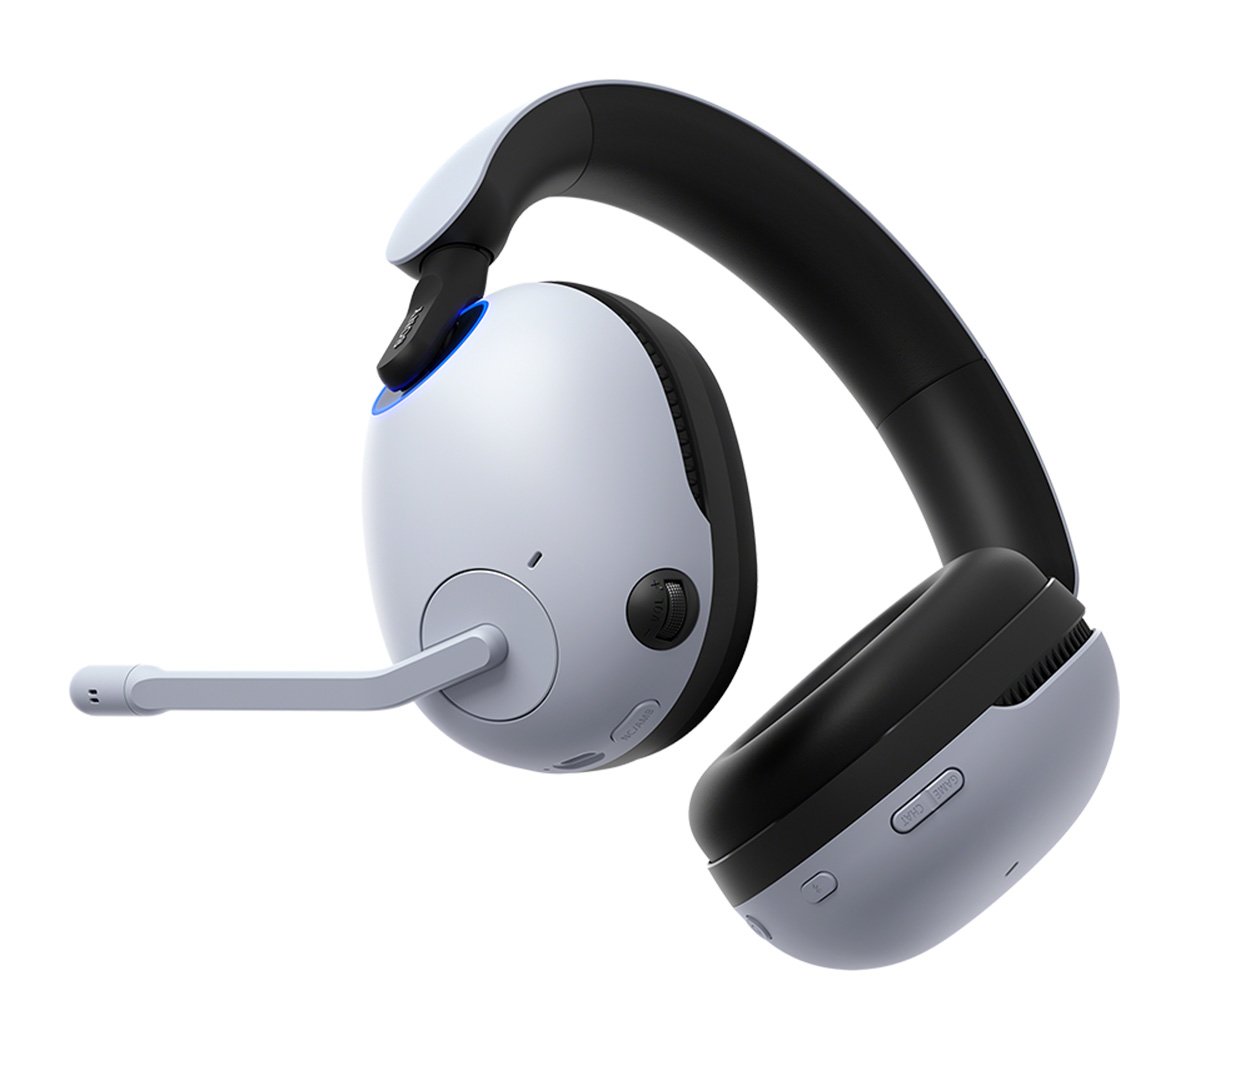 Sony Inzone Gaming Headphones